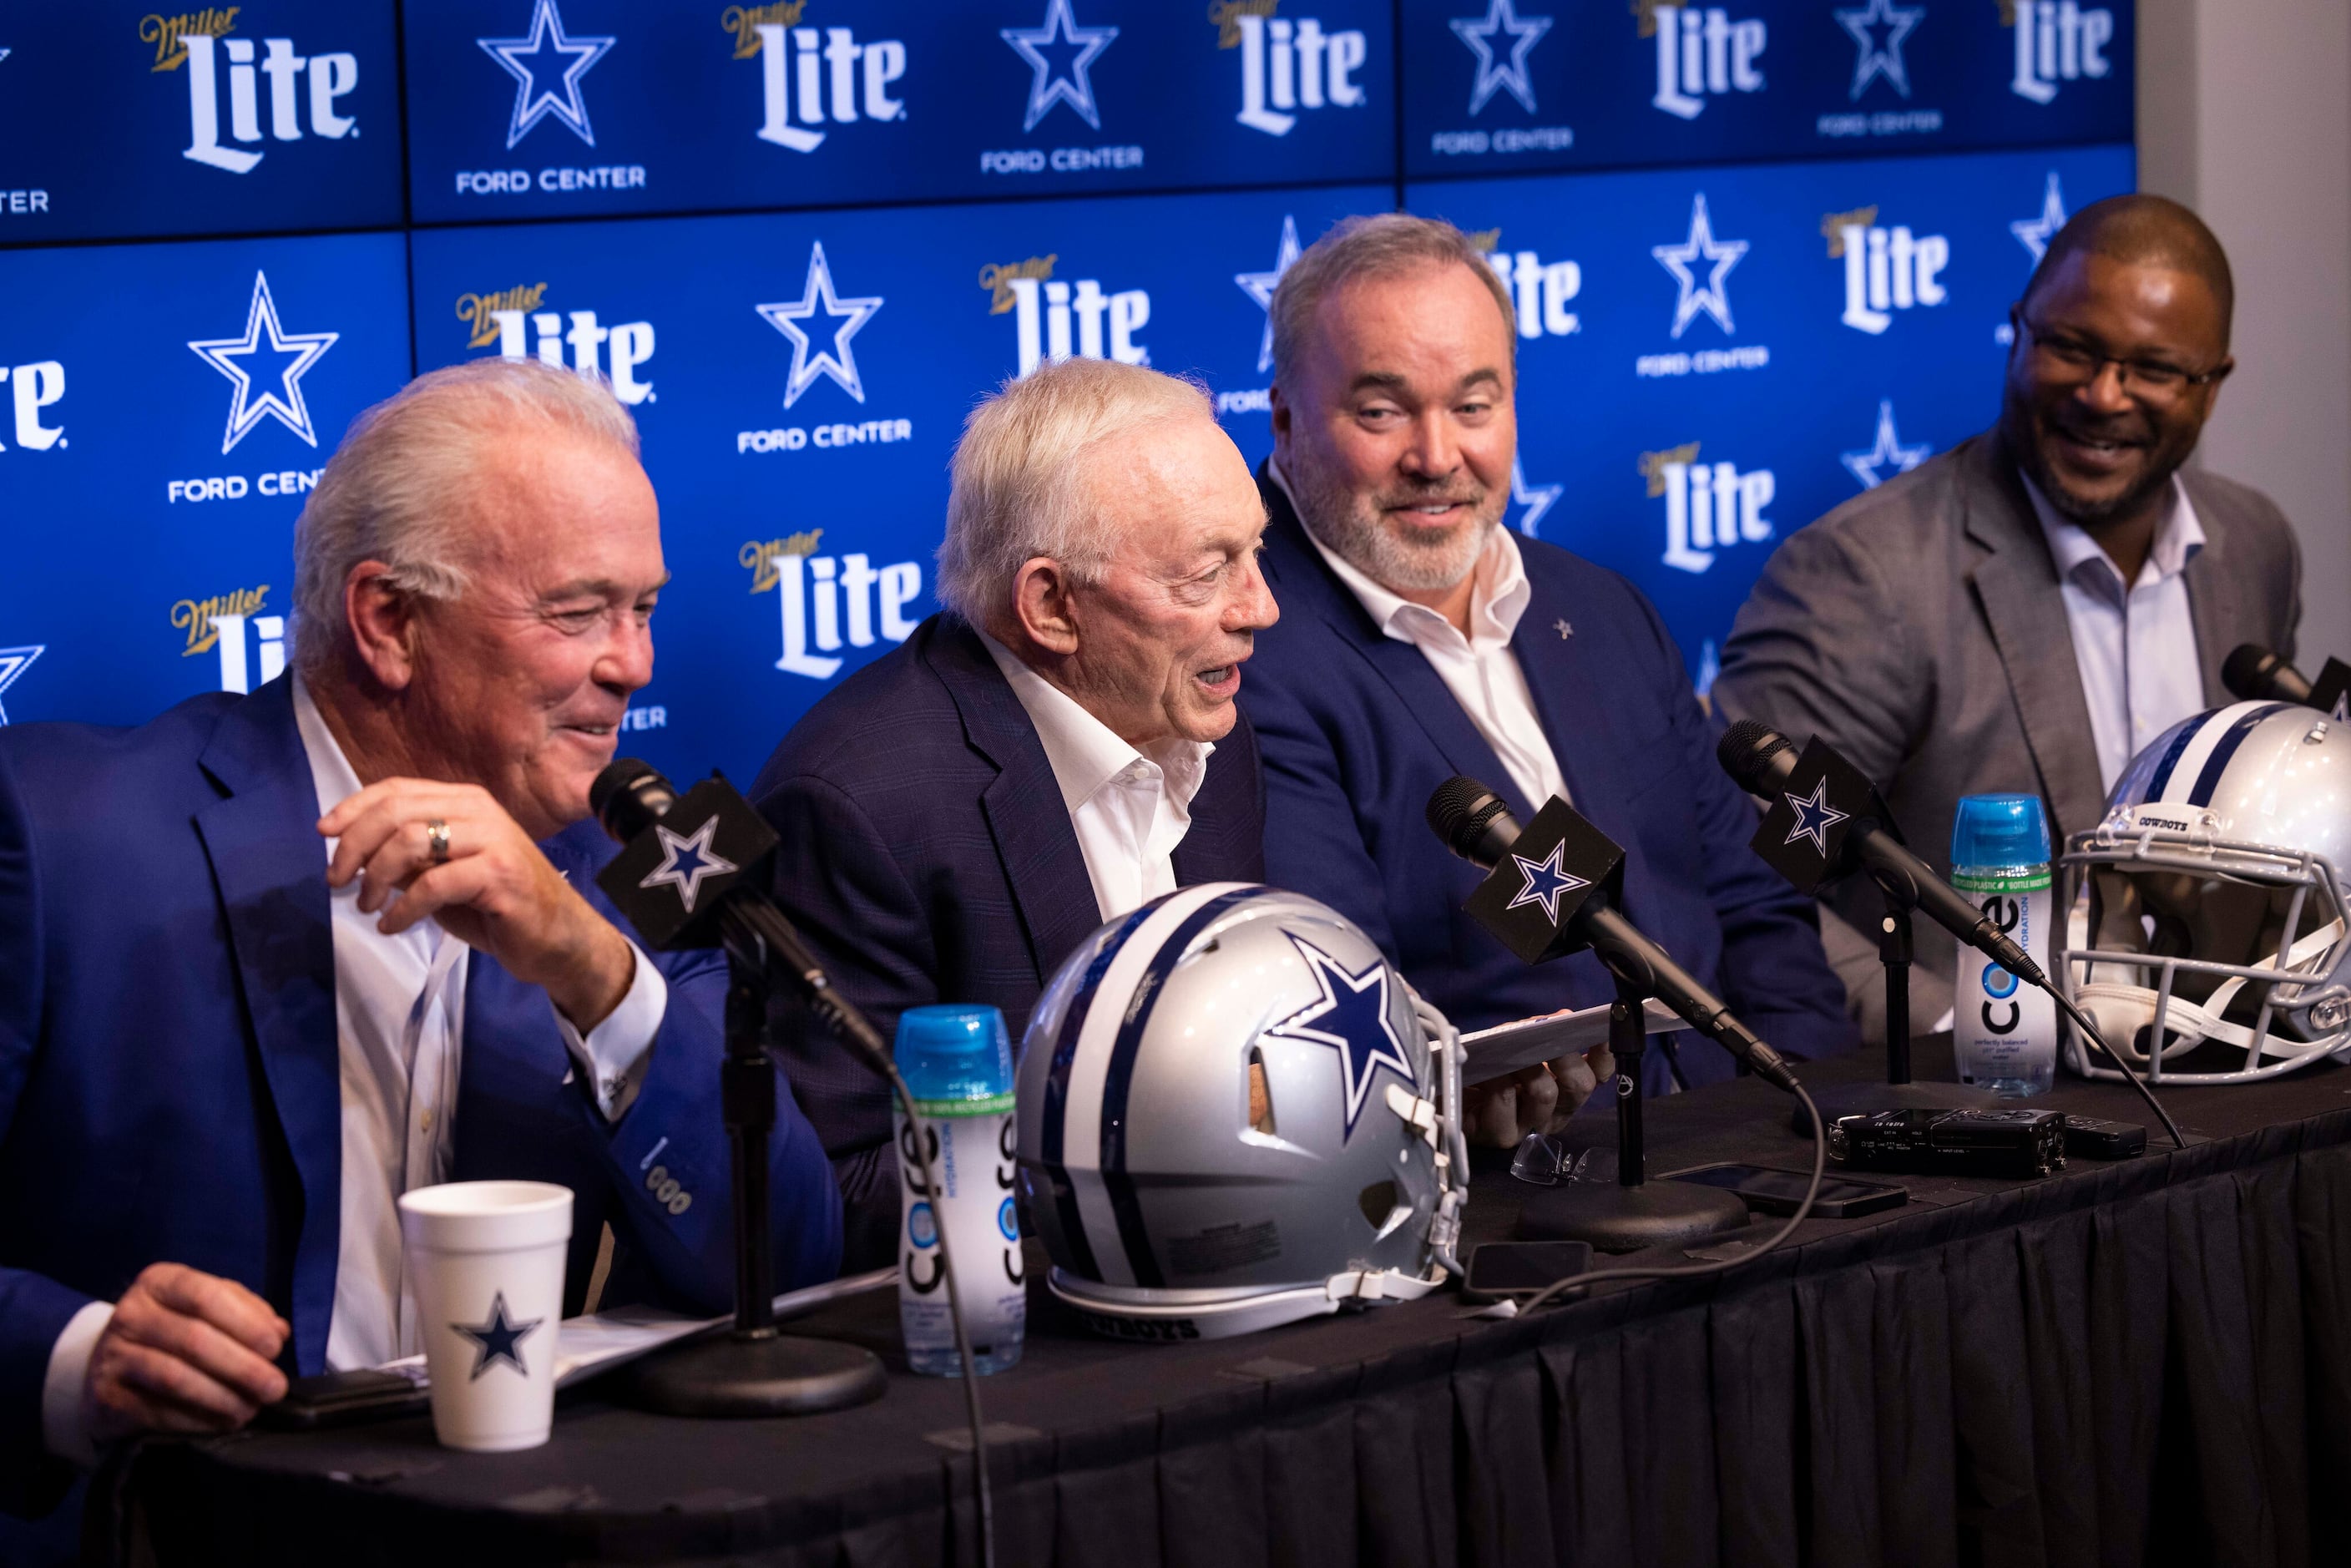 2023 NFL mock draft roundup: See whom experts say the Cowboys will select  at No. 26